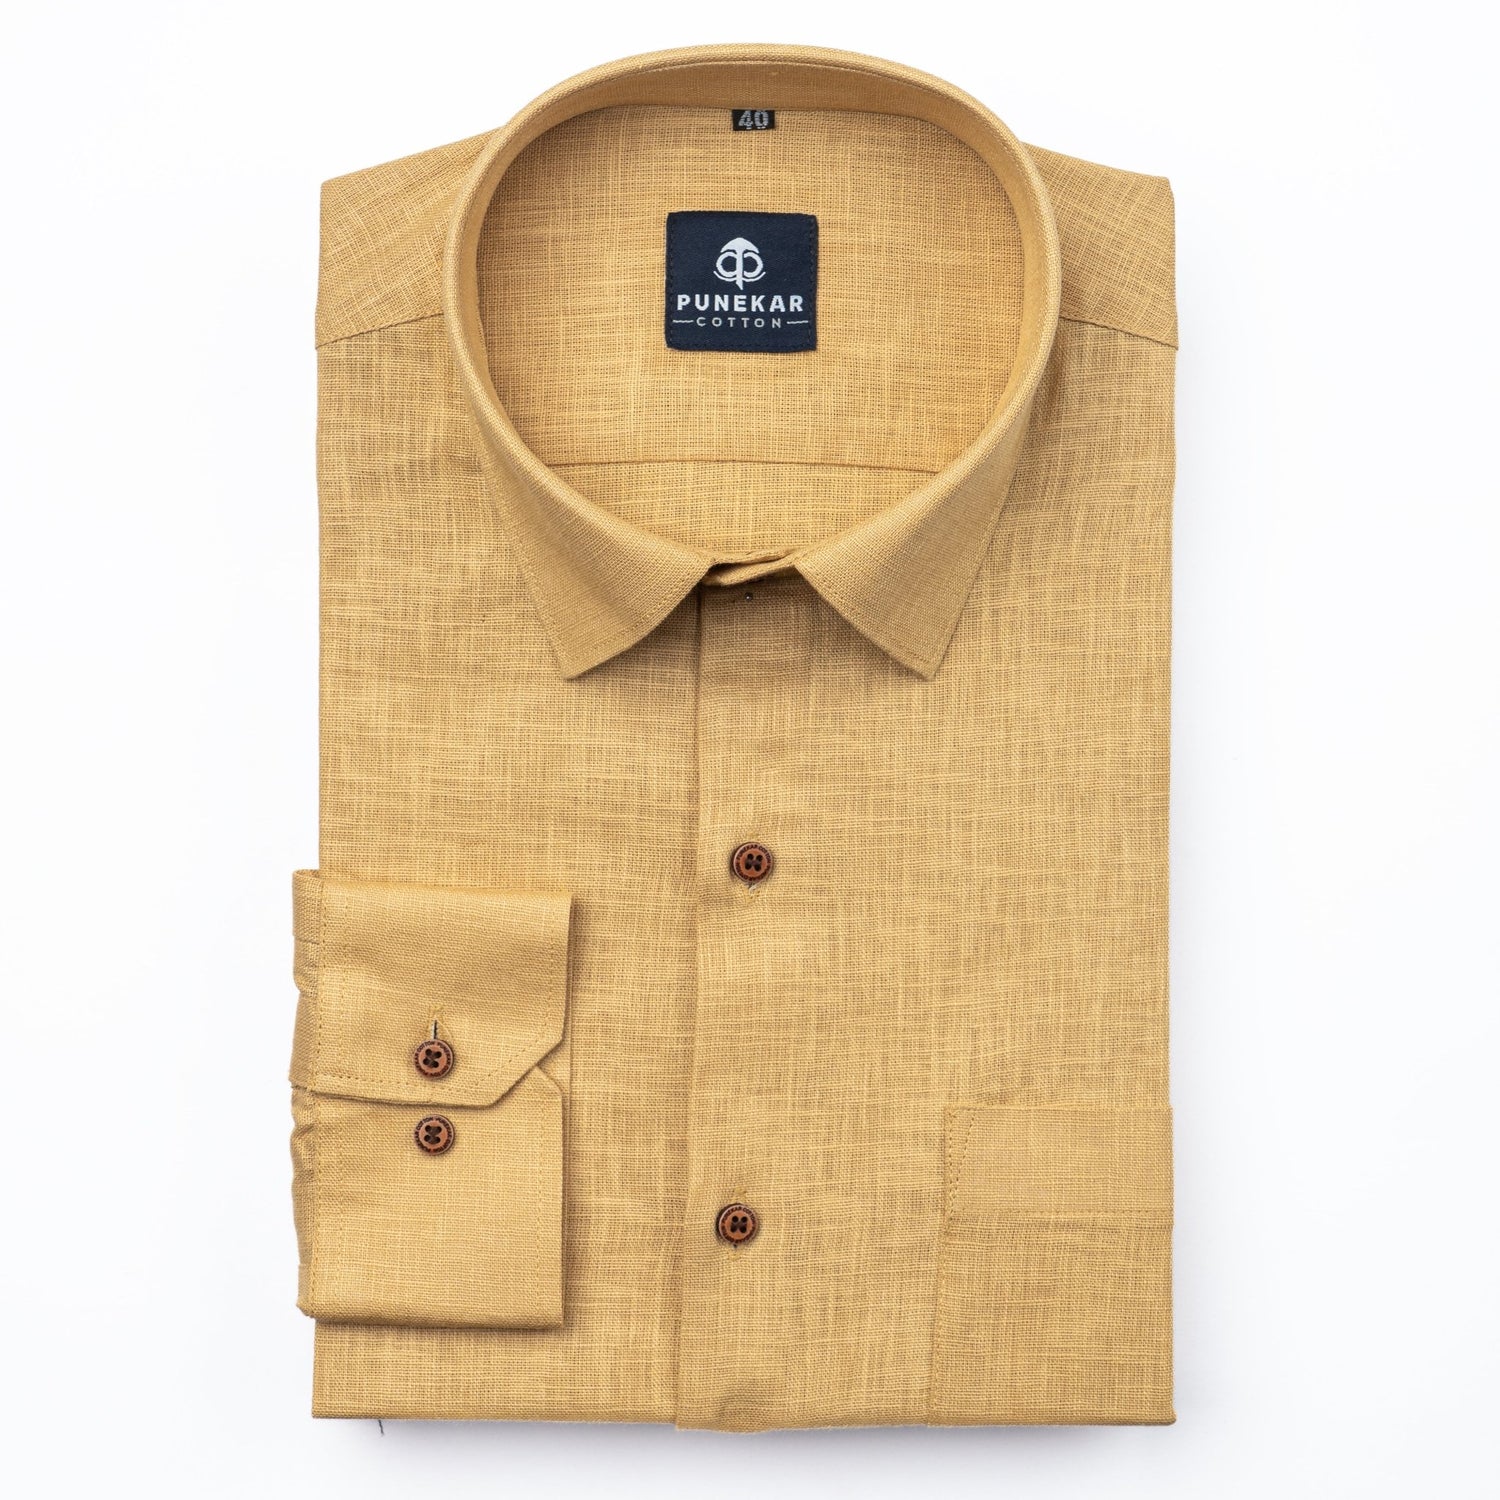 Font Color Linen Formal Shirts For Men - Punekar Cotton